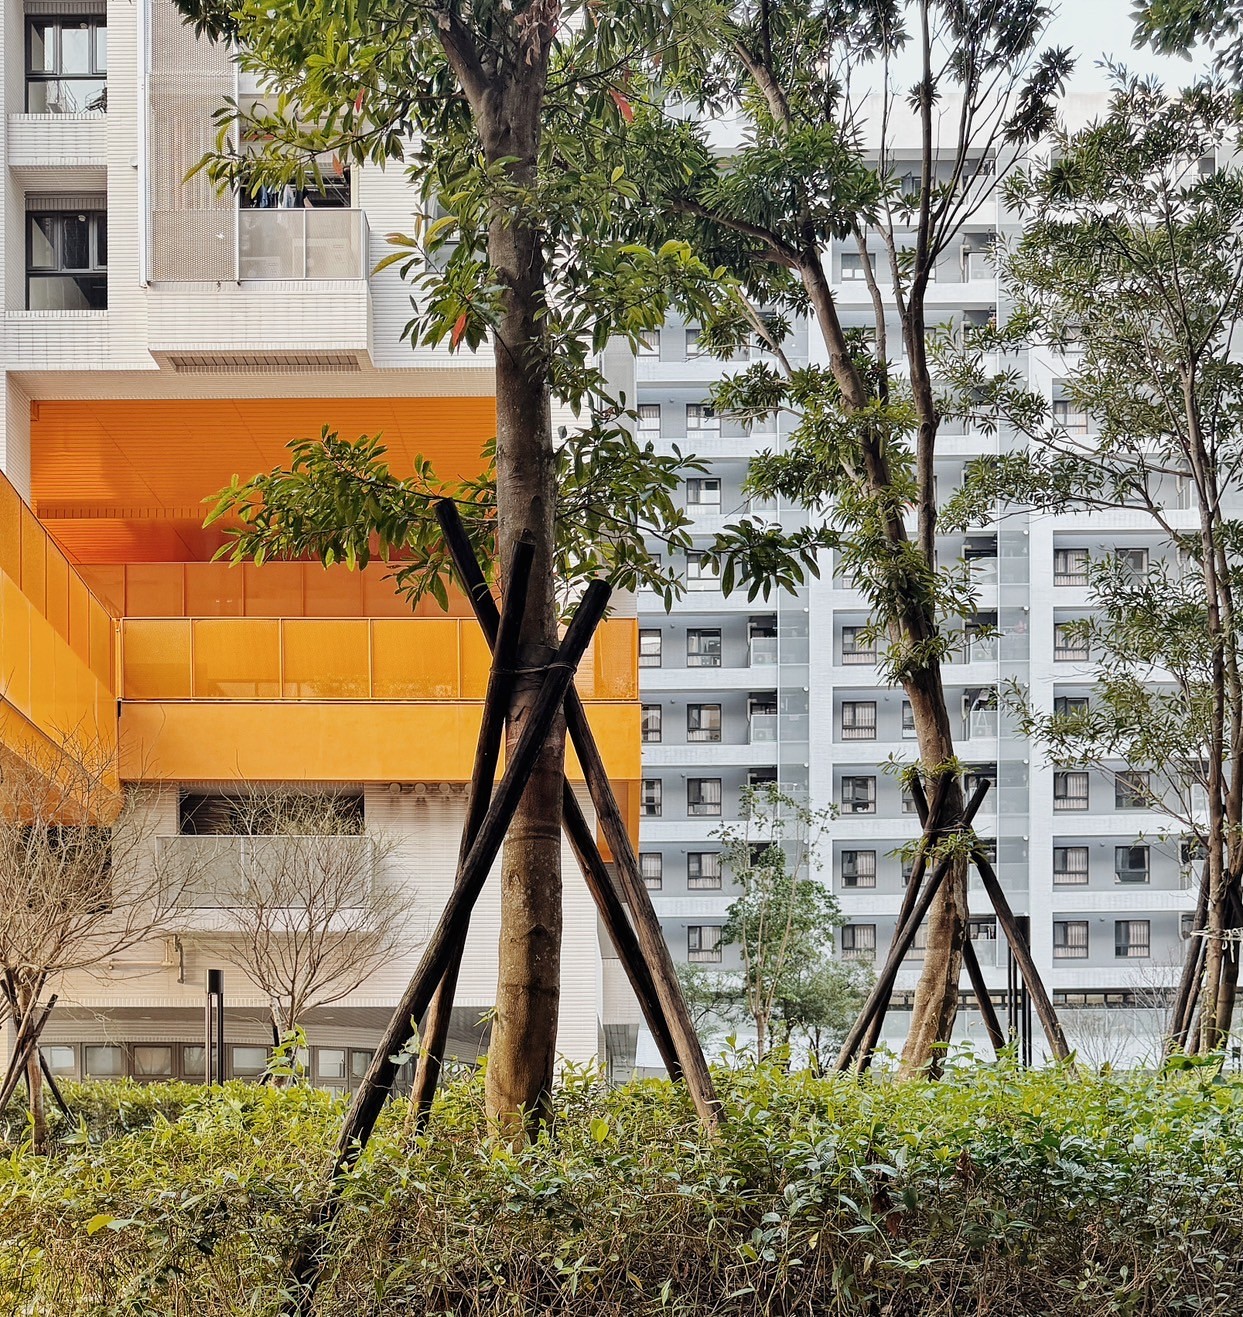 「土城員和段青年社會住宅」由陳章安聯合建築師事務所設計，榮獲台灣住宅建築獎集合住宅佳作獎。以合院式配置，創造互動及自然連結的社區空間，開放式的設計引入綠帶空間，提升鄰里聯繫，同時實現綠色建築概念，成為城市中的綠洲